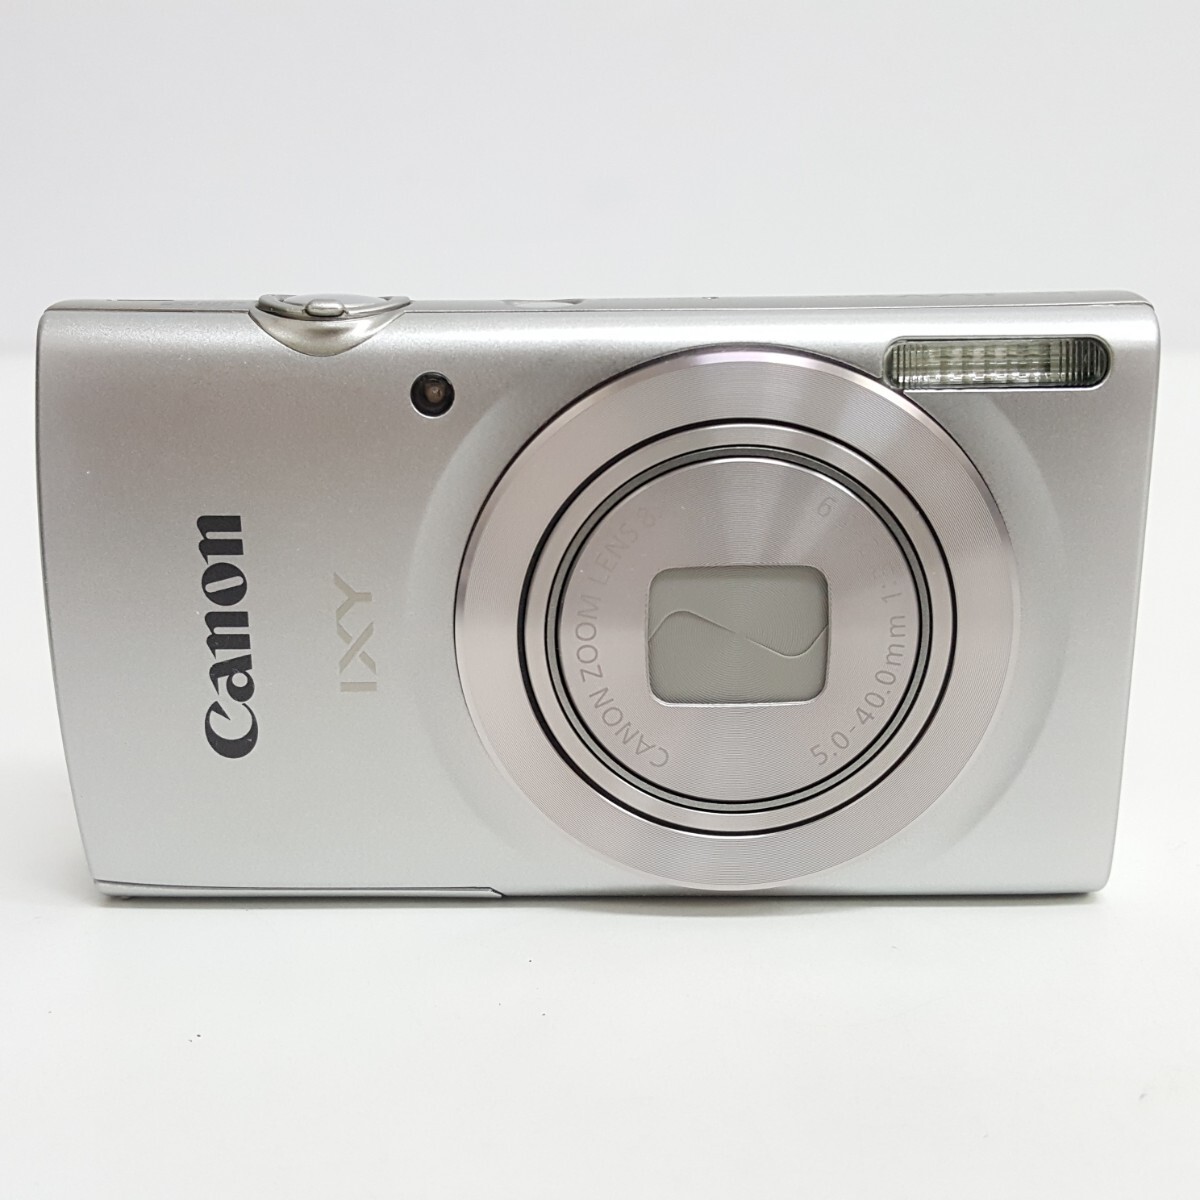 【 IXY200 】Canon キヤノン デジタルカメラ IXY 200 シルバー_画像2